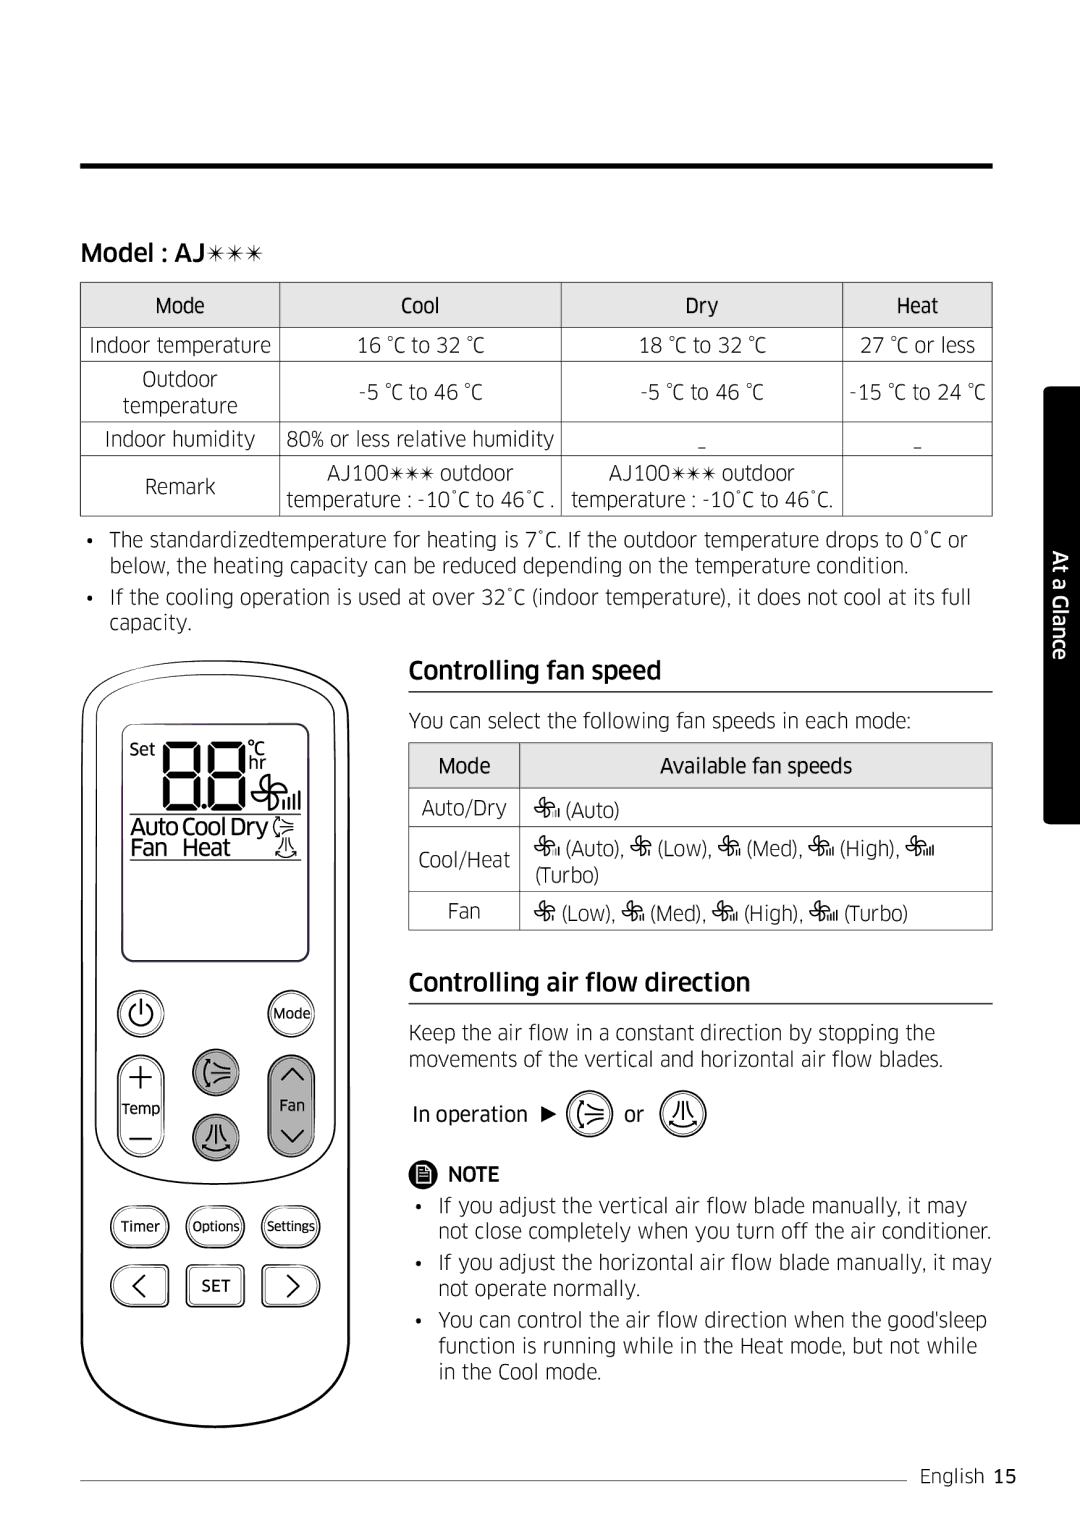 Samsung AR24MSPDBWKNEU, AR18MSPDBWKNEU manual Model AJ, Controlling fan speed, Controlling air flow direction 